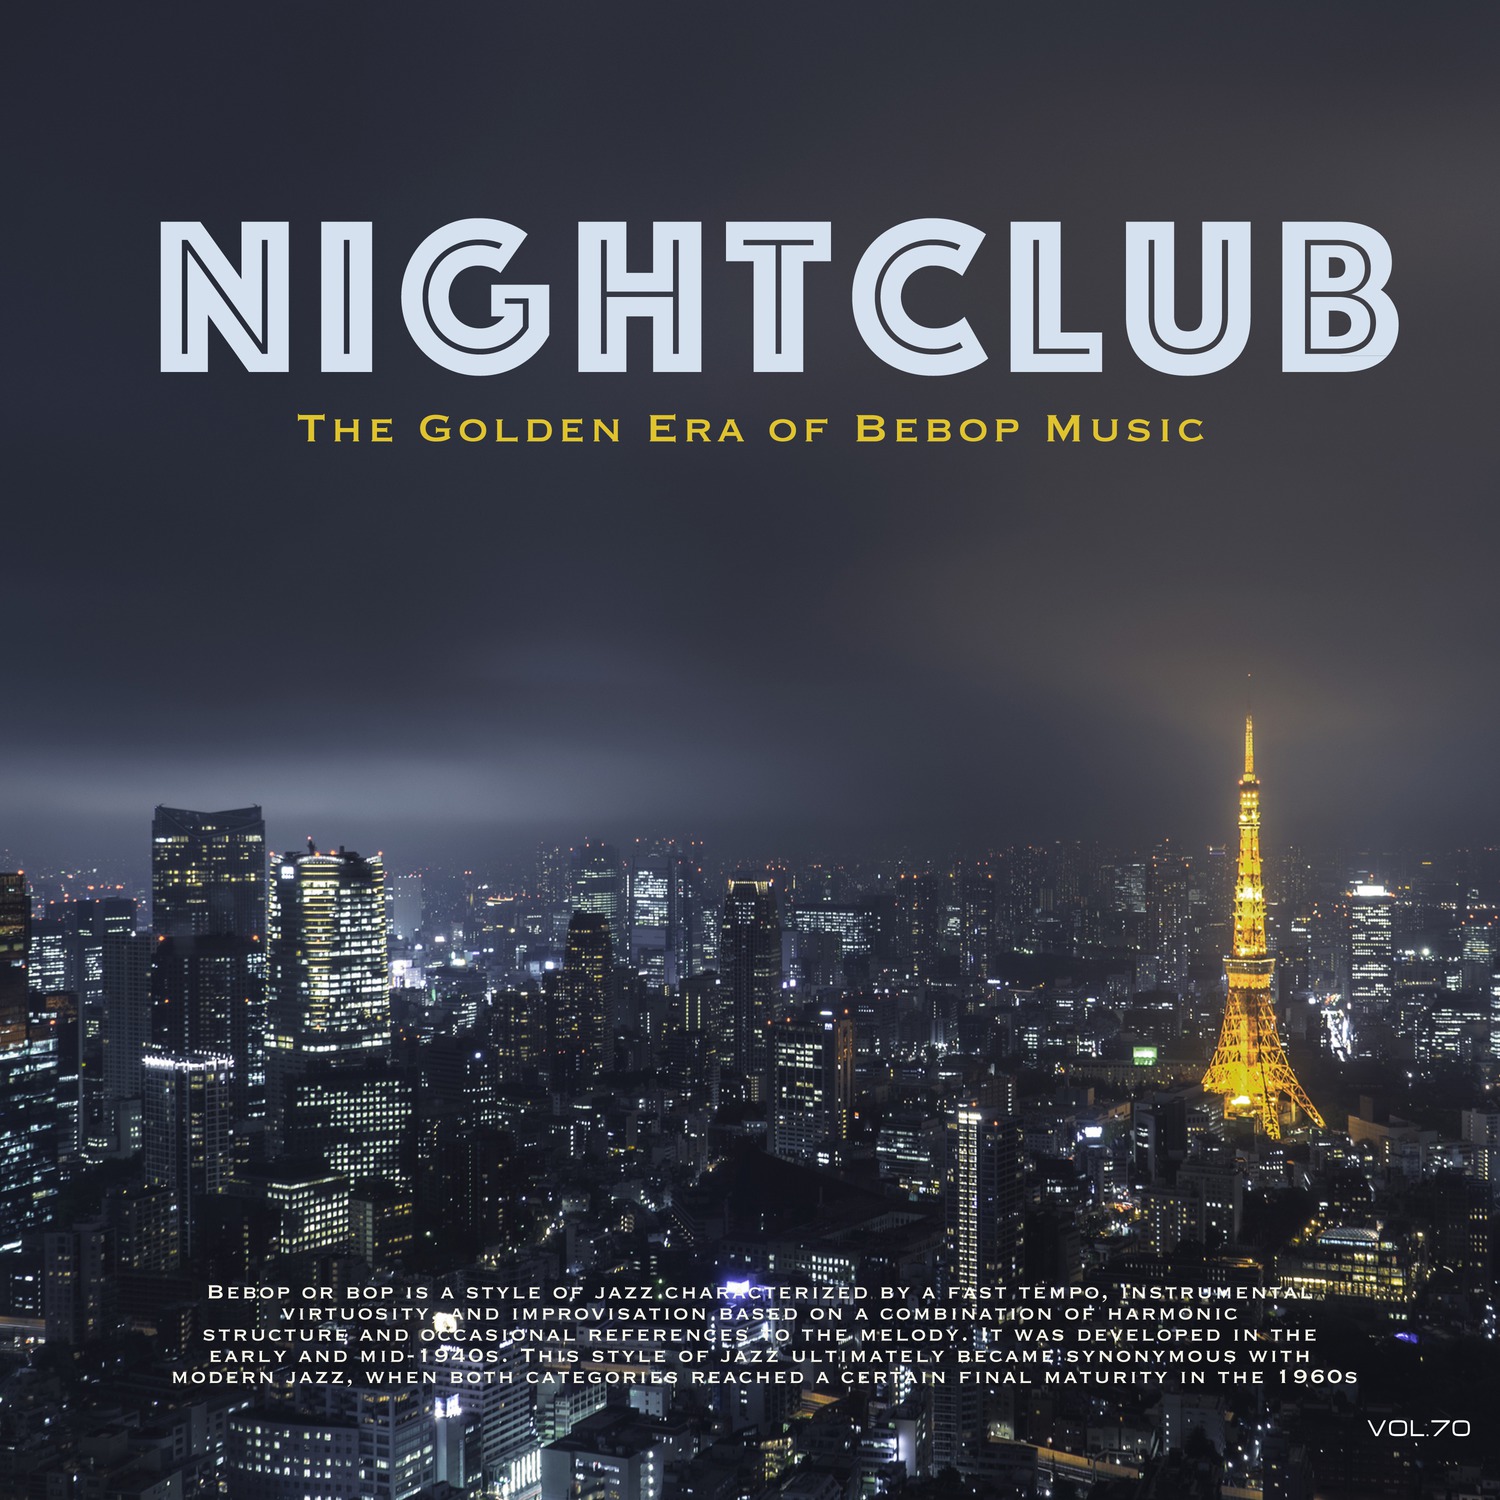 Nightclub, Vol. 70 (The Golden Era of Bebop Music)